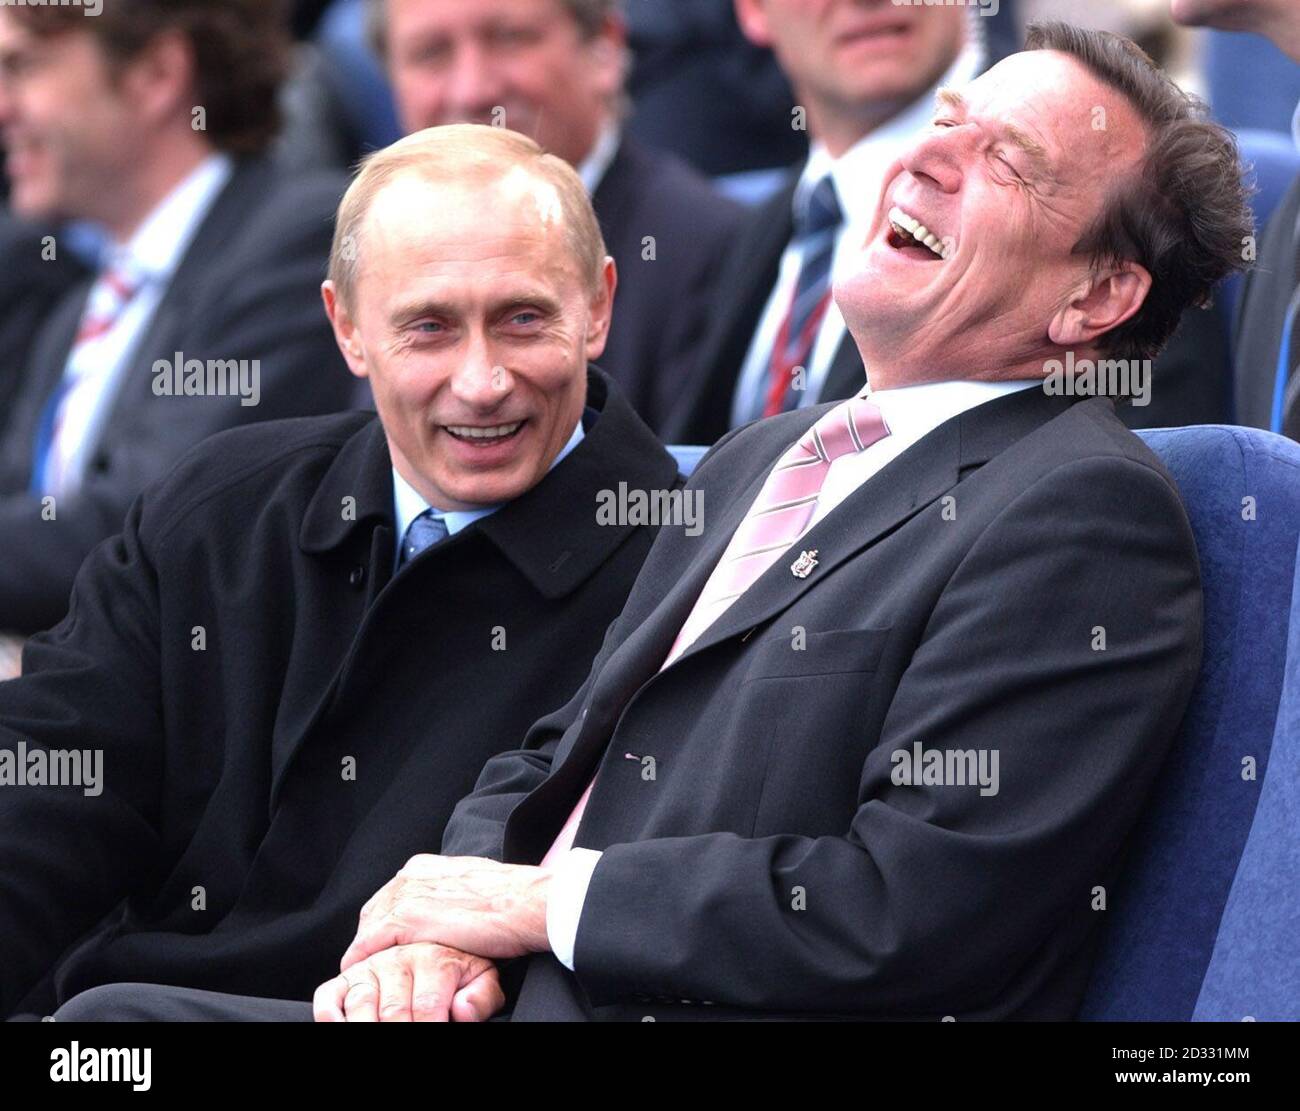 Der russische Staatschef Vladamir Putin (links) teilt einen Witz mit dem deutschen Bundeskanzler Gerhard Schröder, während sie ein Festival auf dem Fluss in St. Petersburg, Russland, ansahen, um das hundertjährige Jubiläum der Stadt zu feiern. Stockfoto